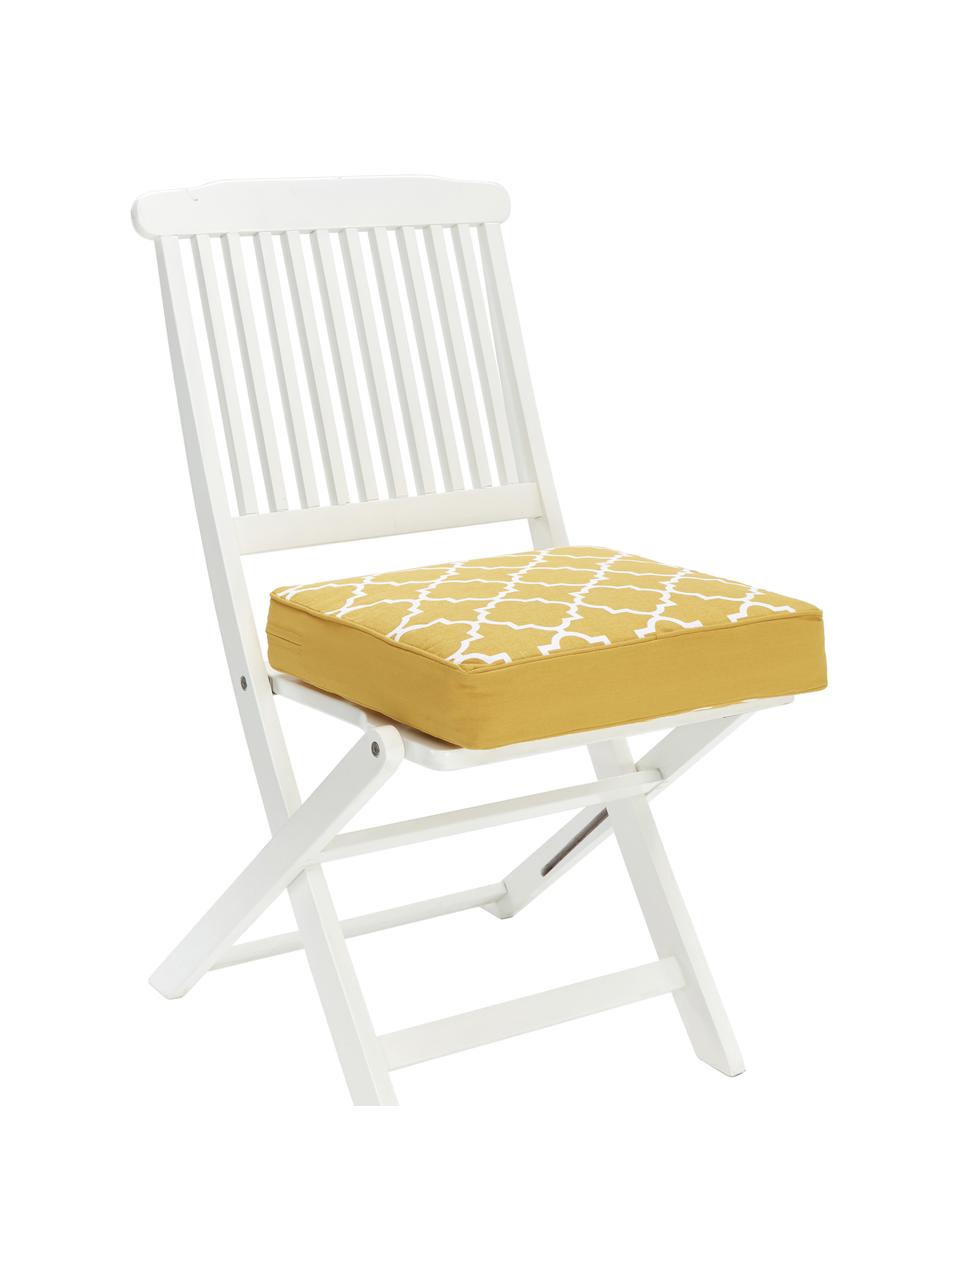 Hohes Sitzkissen Lana in Gelb/Weiß, Bezug: 100% Baumwolle, Gelb, 40 x 40 cm